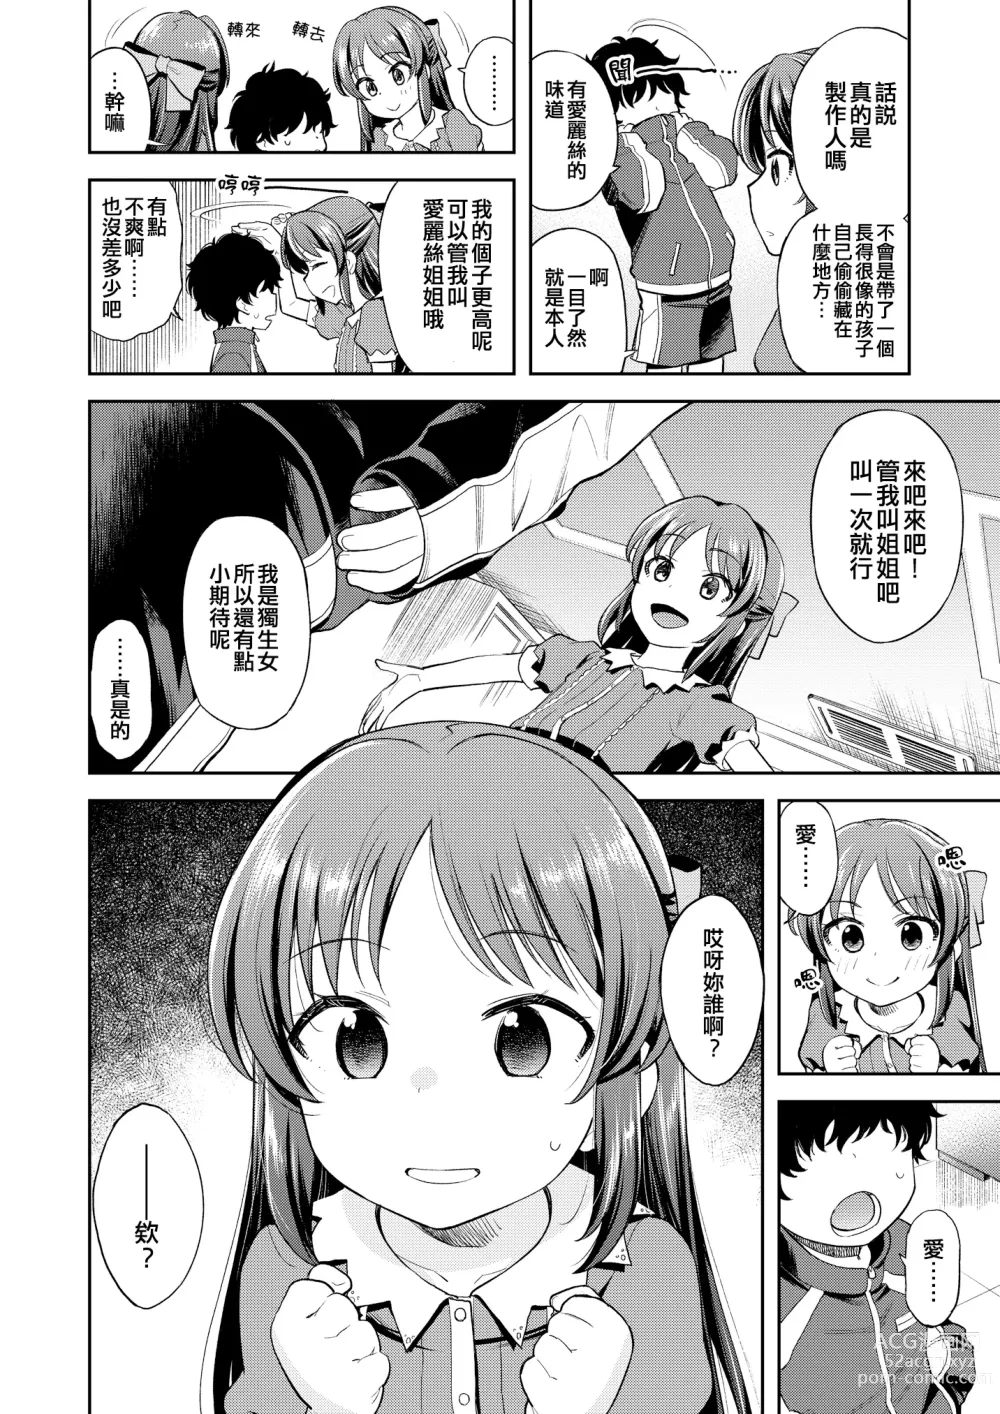 Page 4 of doujinshi Warui Ko Arisu inPio